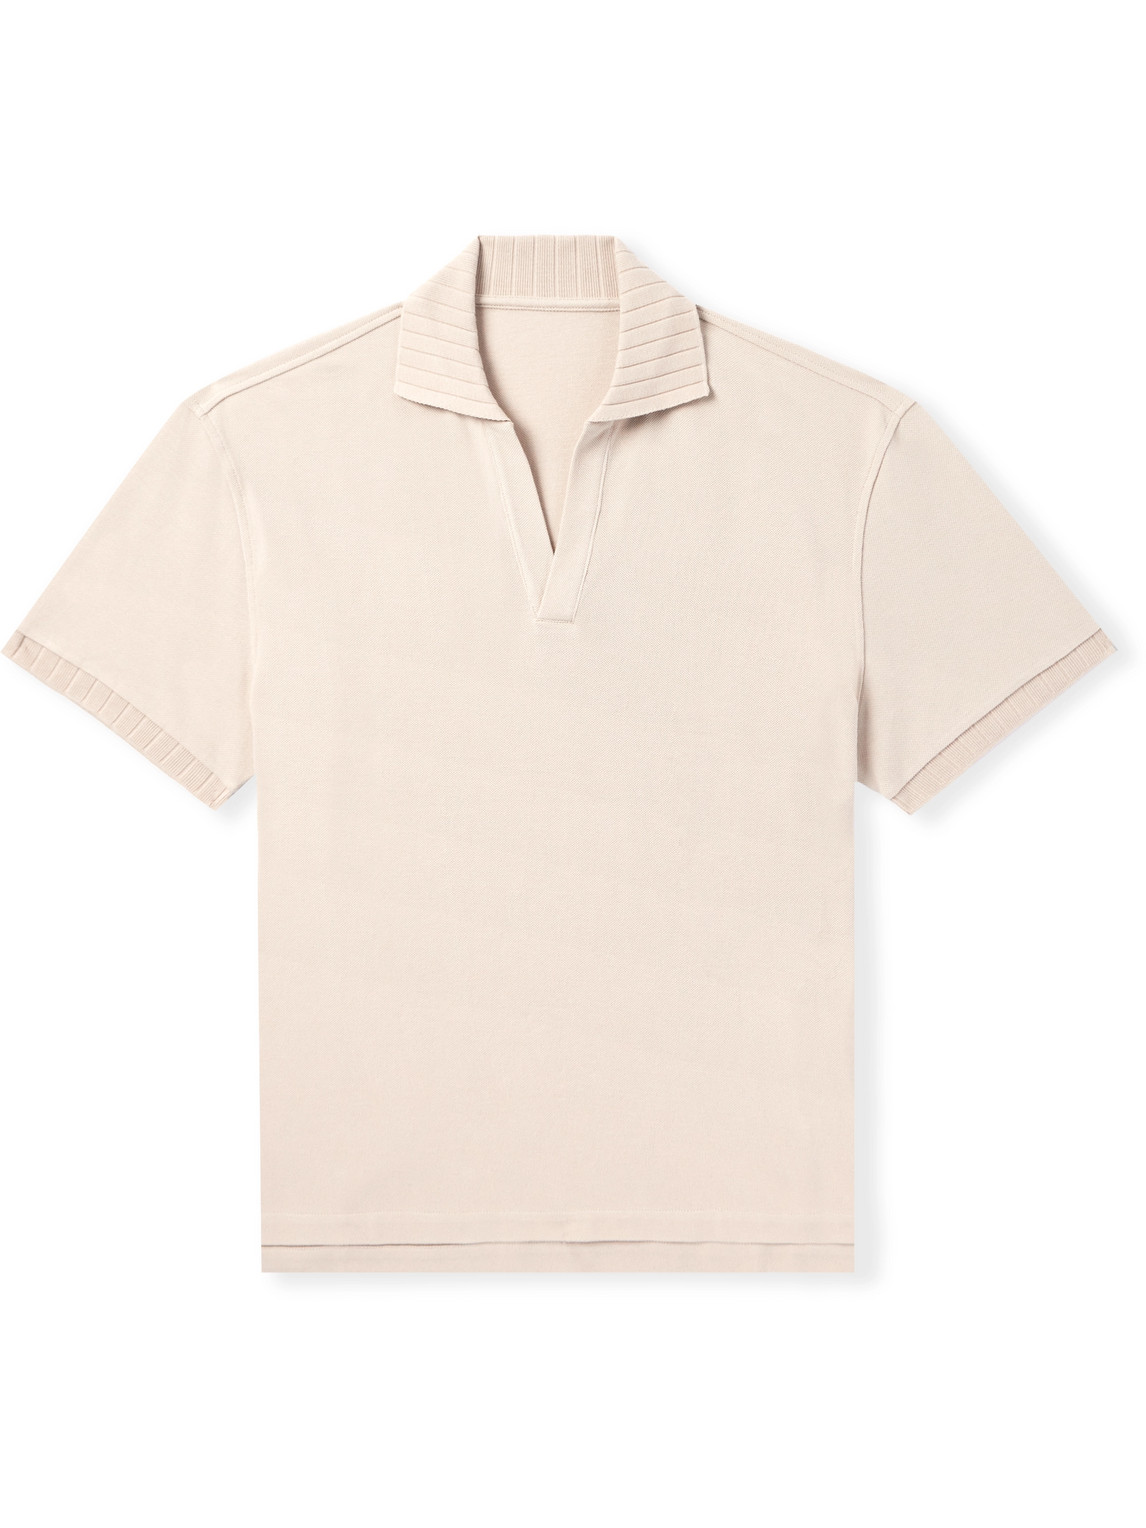 Stòffa Cotton-piqué Polo Shirt In Neutrals